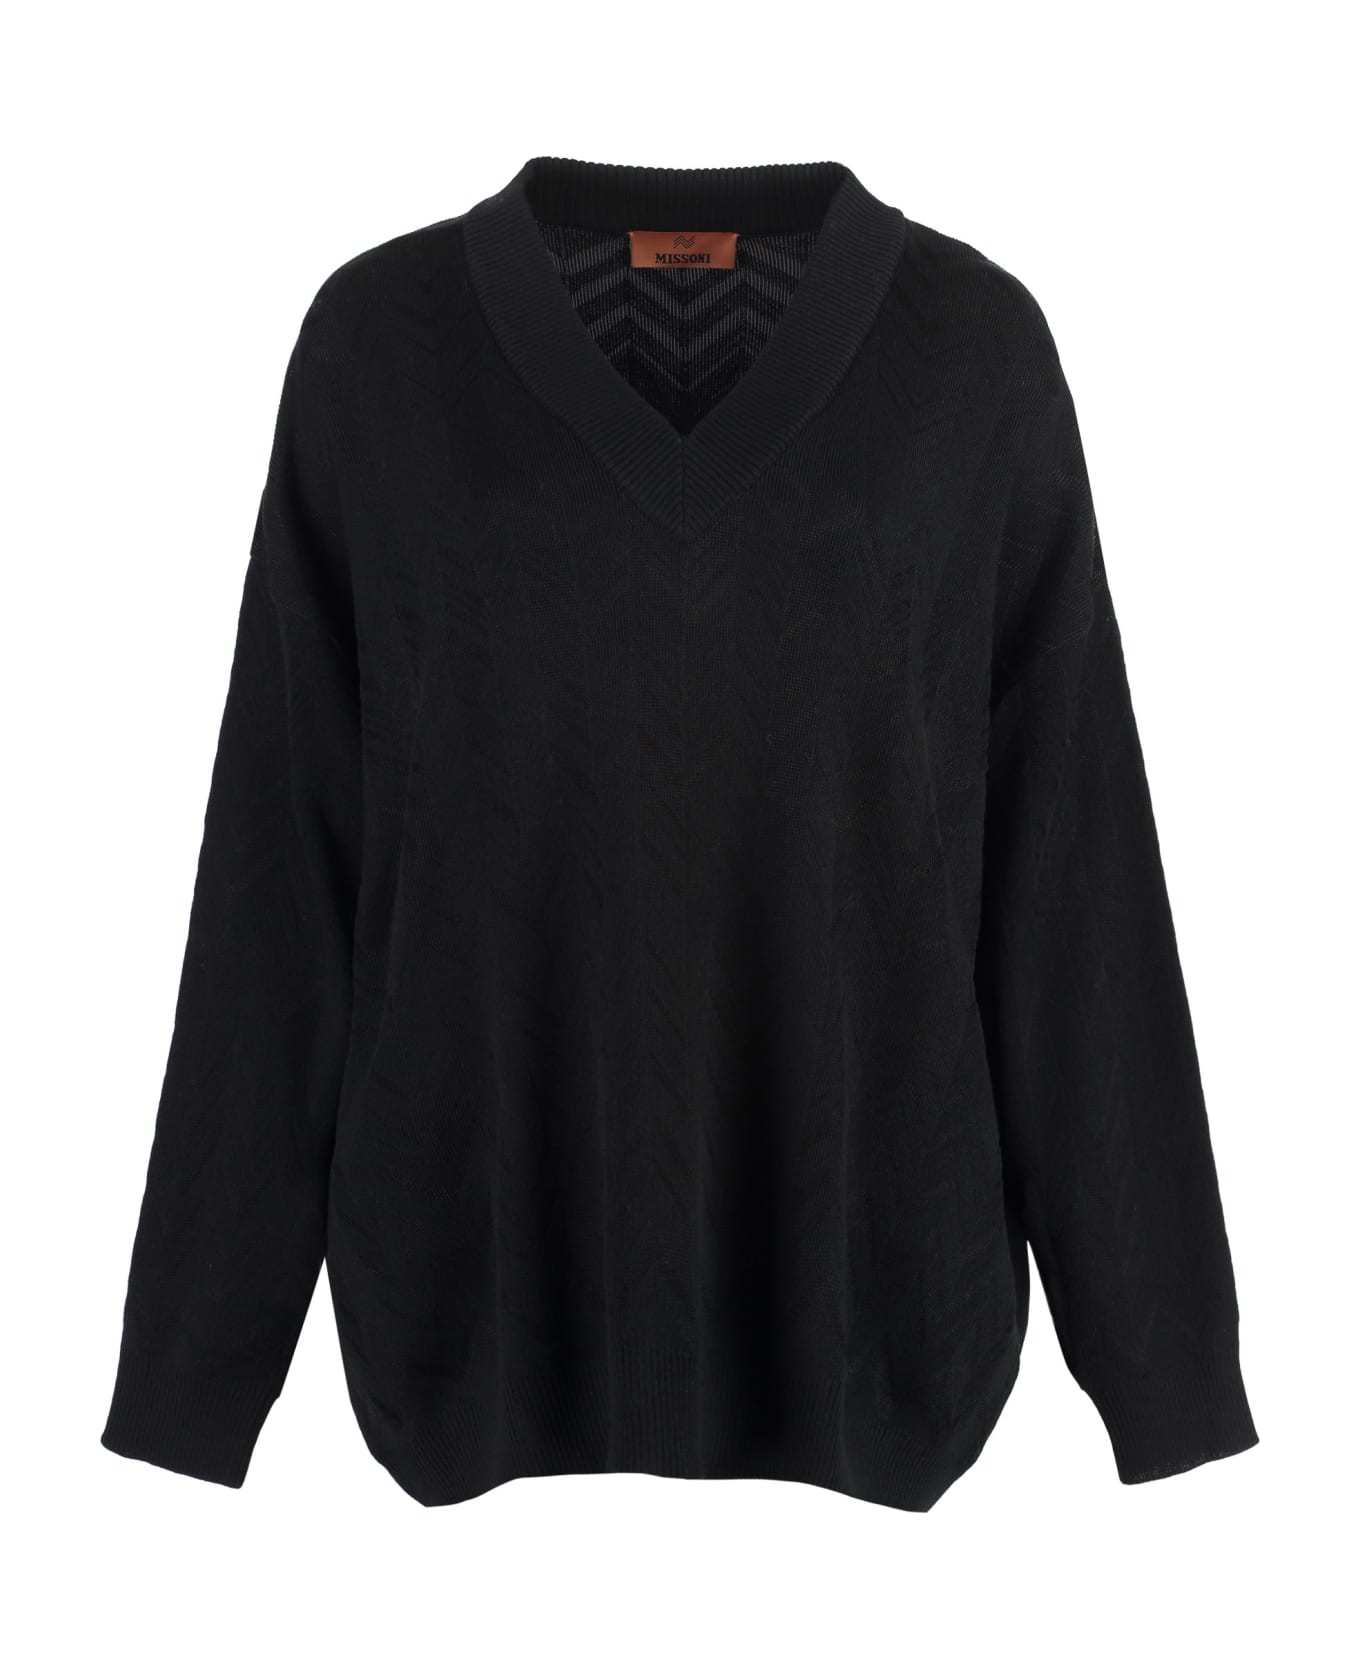 Missoni Wool Blend Sweater - black ニットウェア